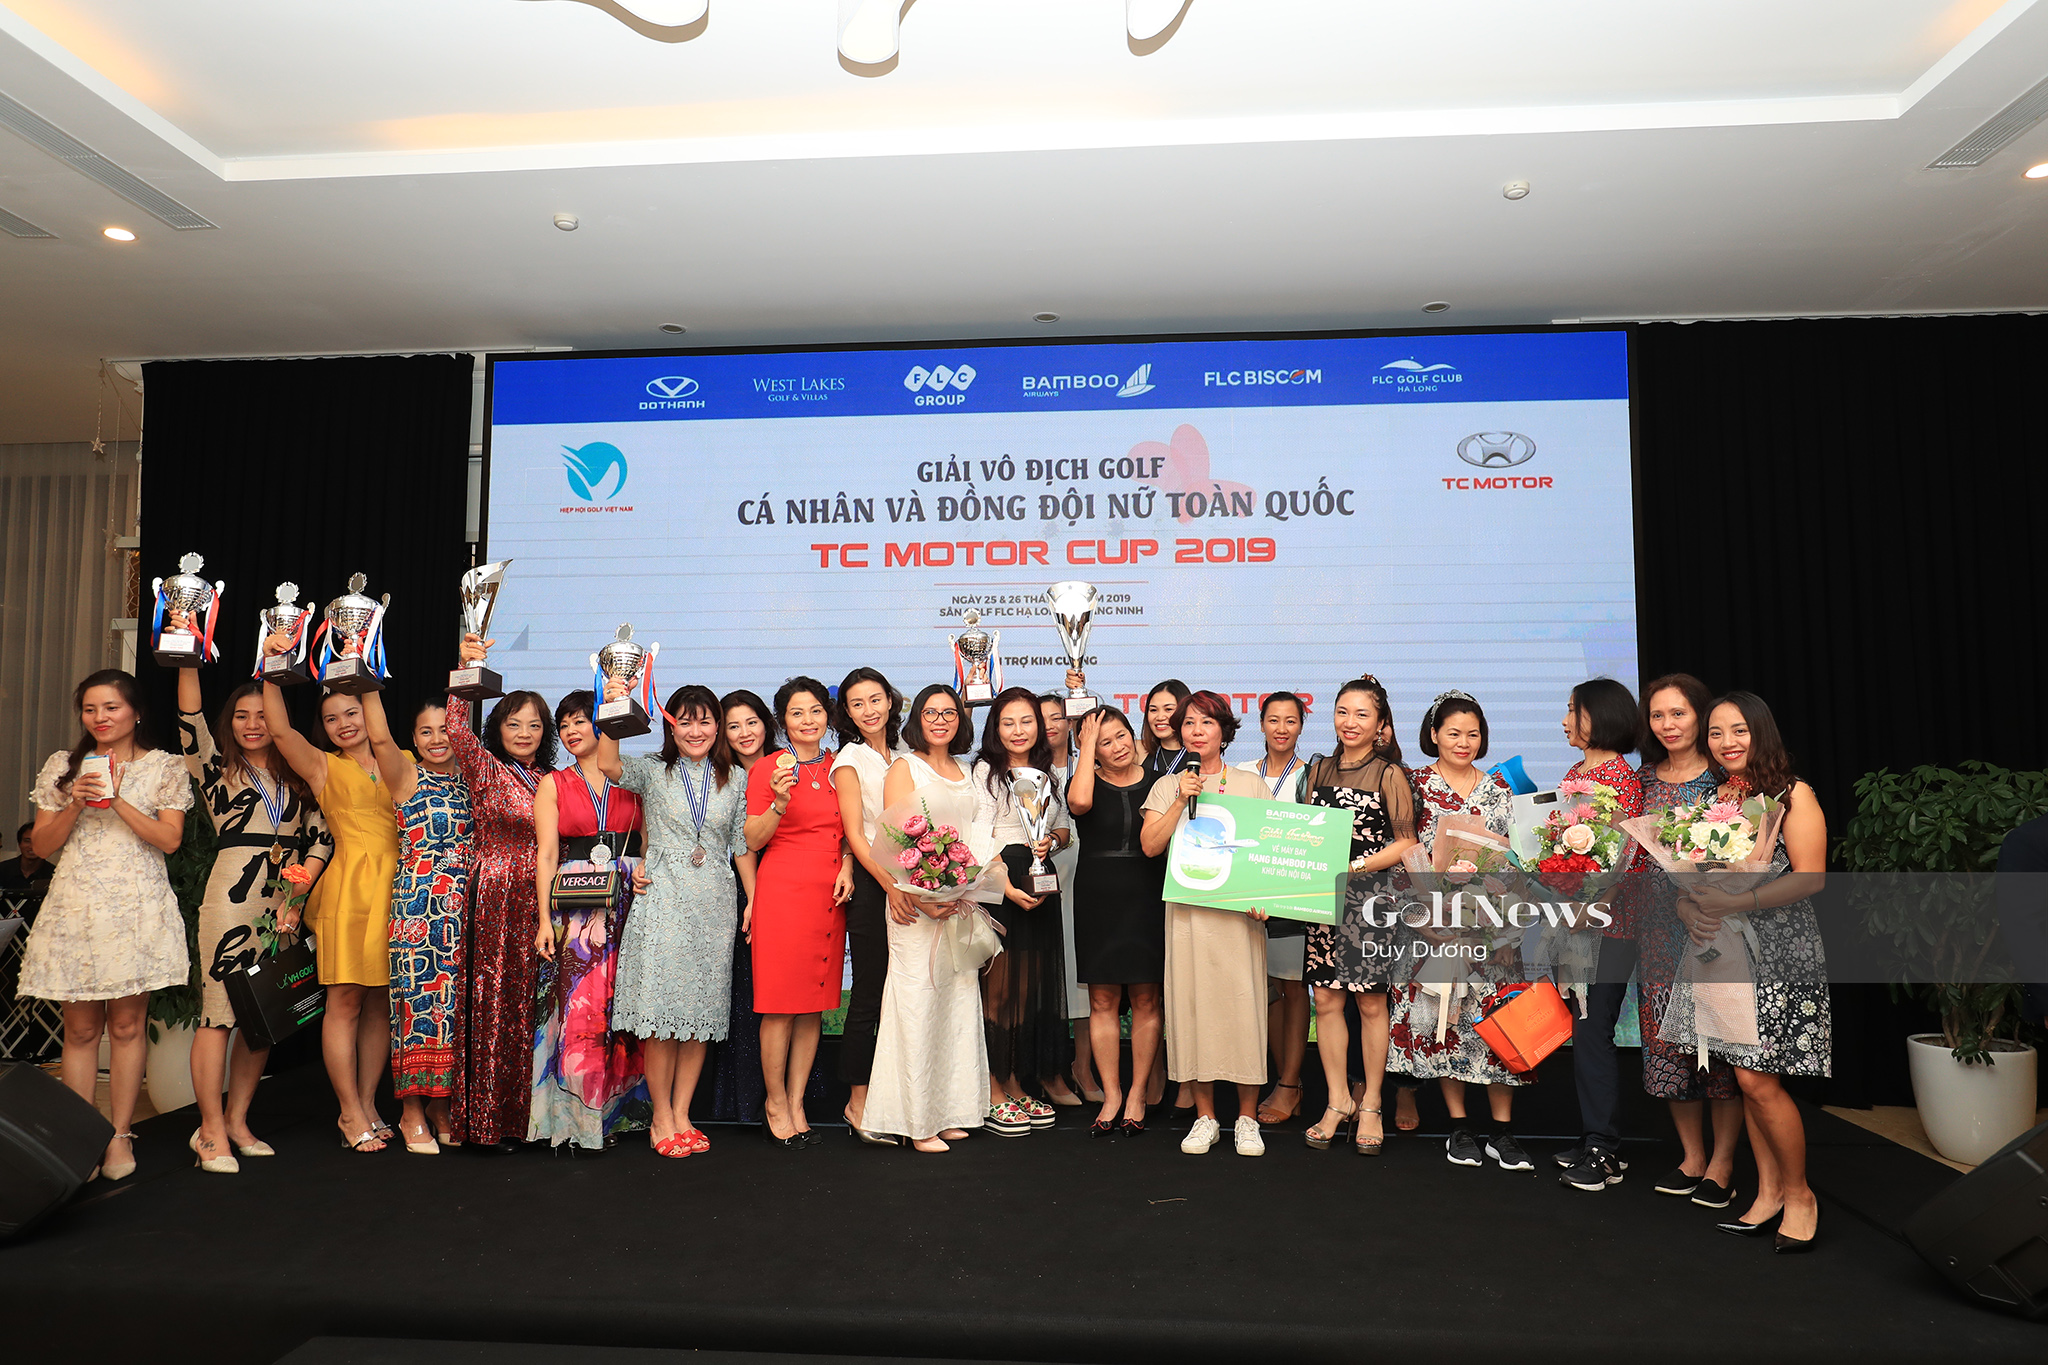 Giải Vô địch Cá nhân và Đồng đội nữ Toàn quốc – TC Motor Cup 2019: Chức vô địch gọi tên Vũ Thị Vân và FLC Bamboo